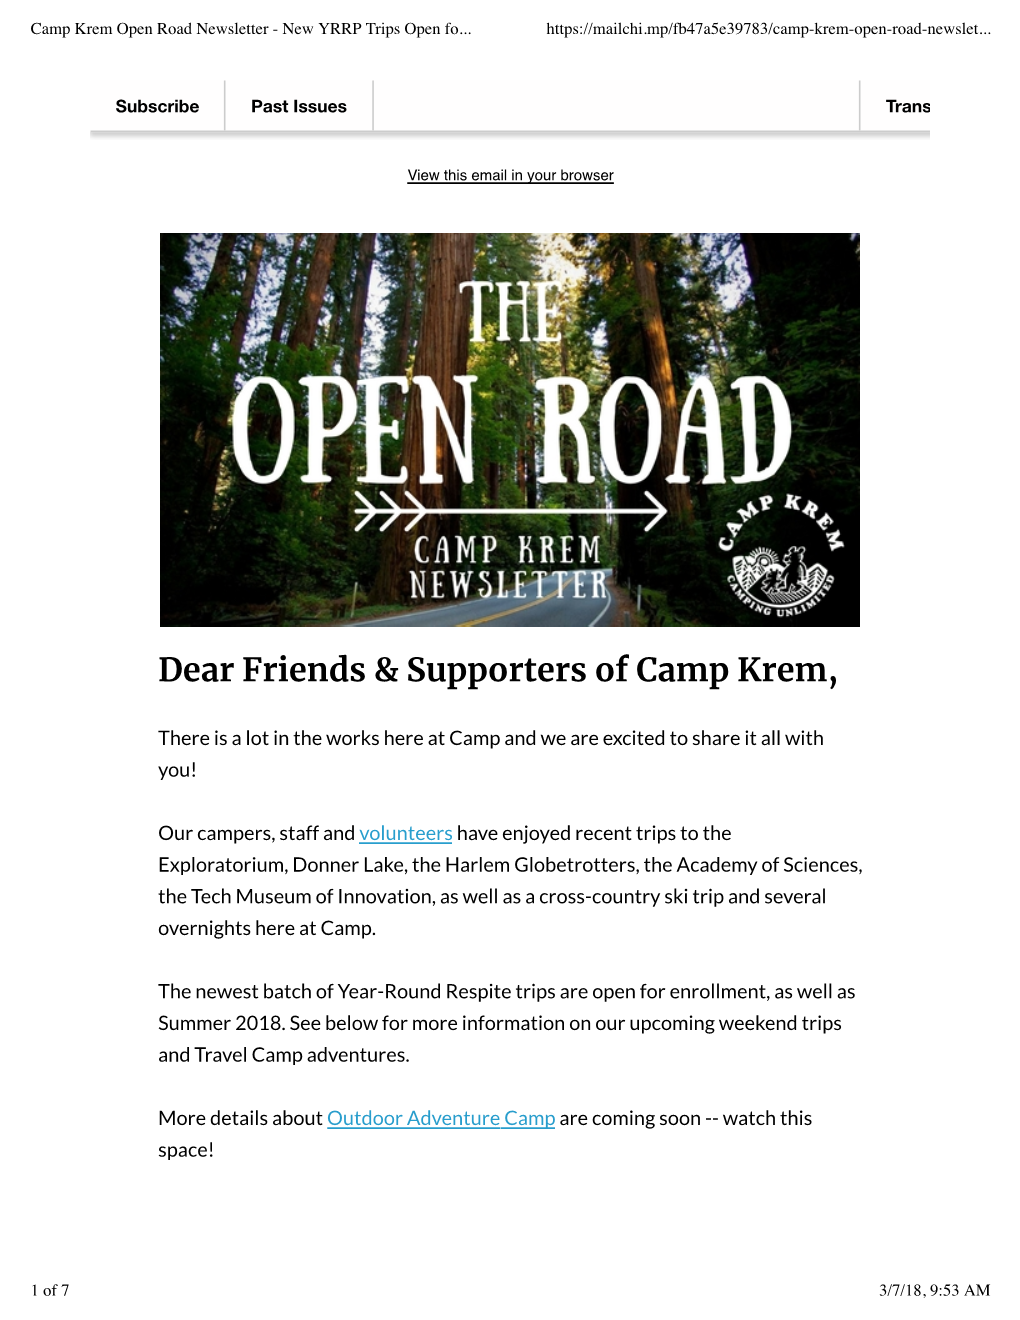 Camp Krem Open Road Newsletter - New YRRP Trips Open Fo